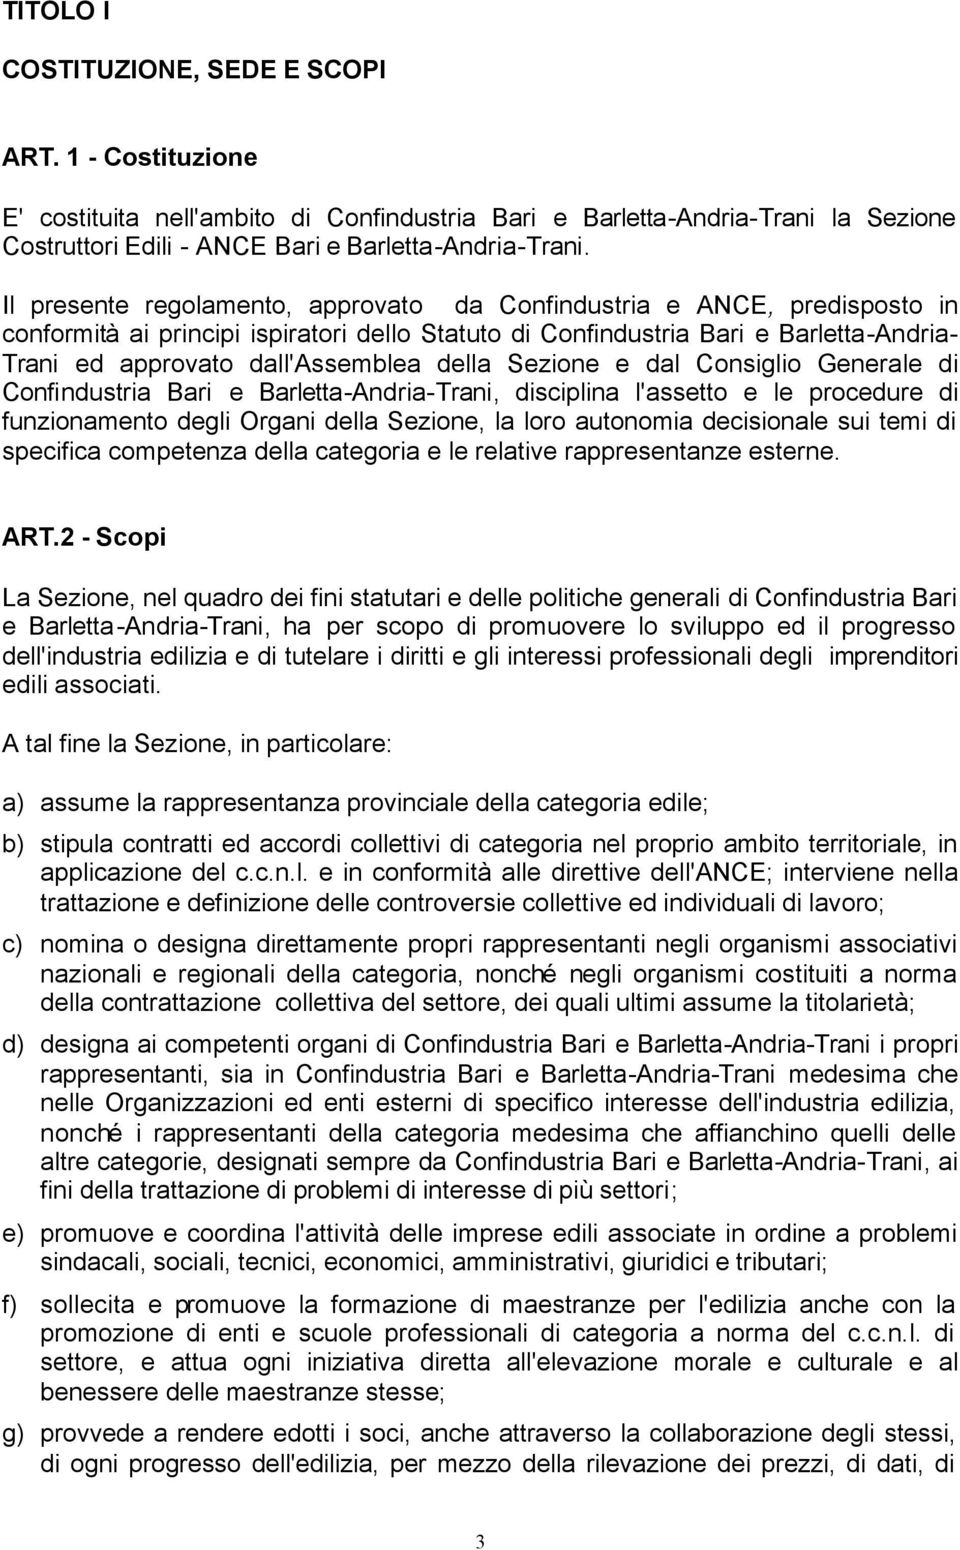 della Sezione e dal Consiglio Generale di Confindustria Bari e Barletta-Andria-Trani, disciplina l'assetto e le procedure di funzionamento degli Organi della Sezione, la loro autonomia decisionale